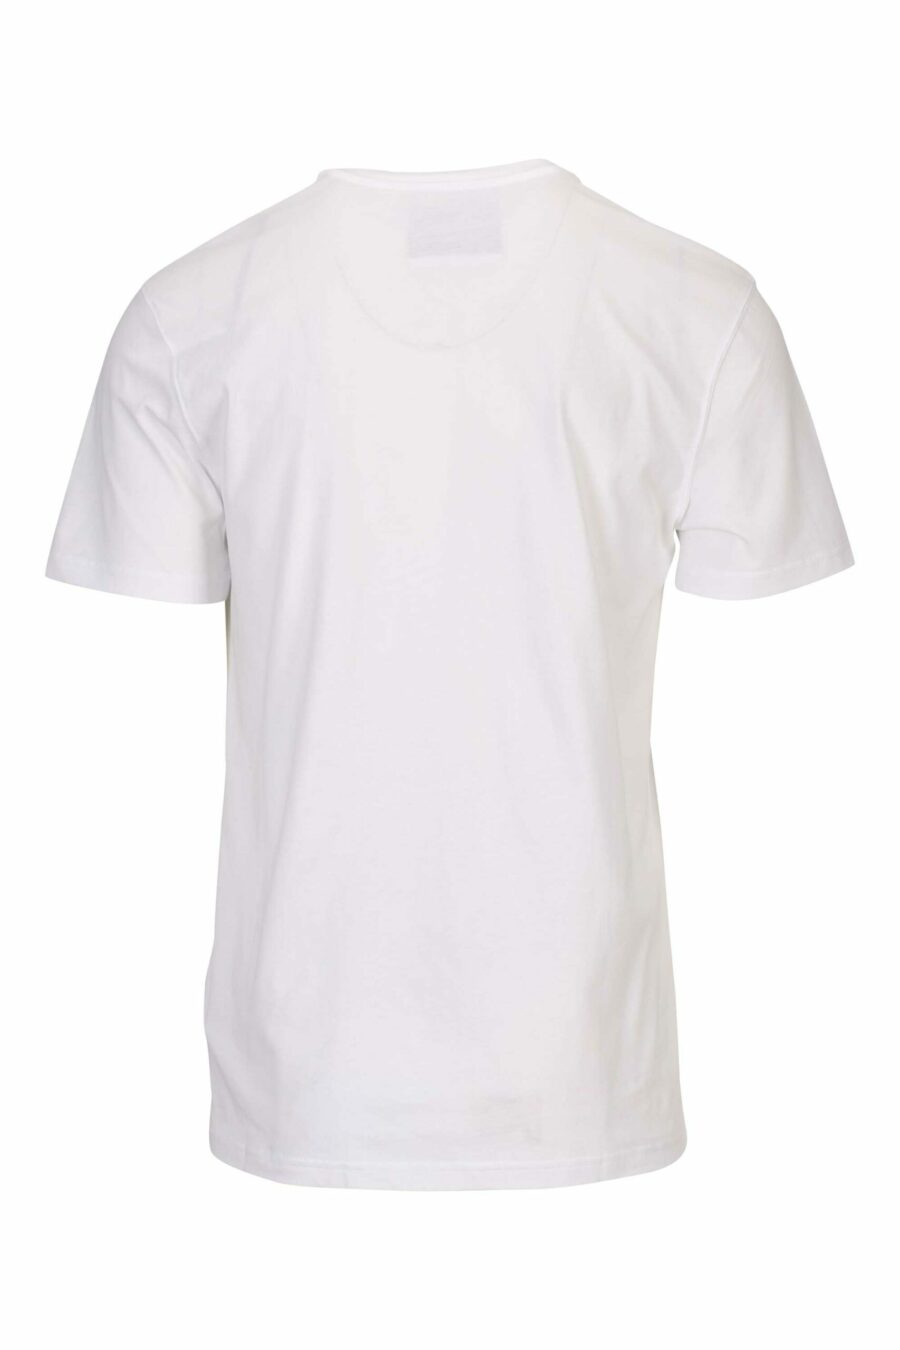 T-shirt branca com mini logótipo preto - 667113394664 1 à escala